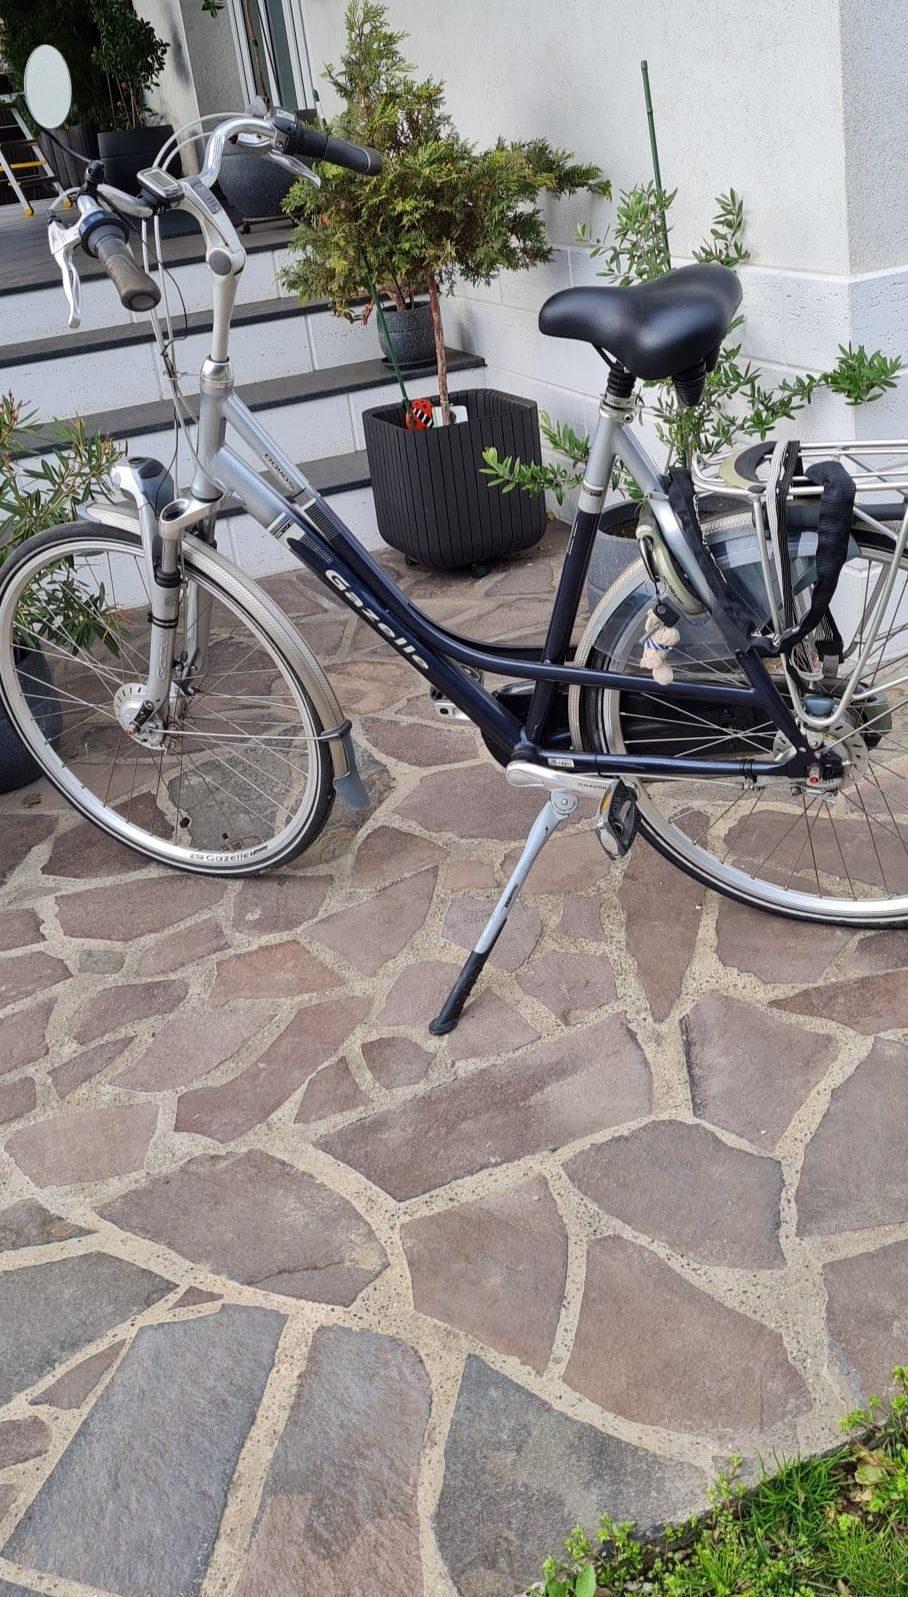 Bicicleta Dama Gazelle